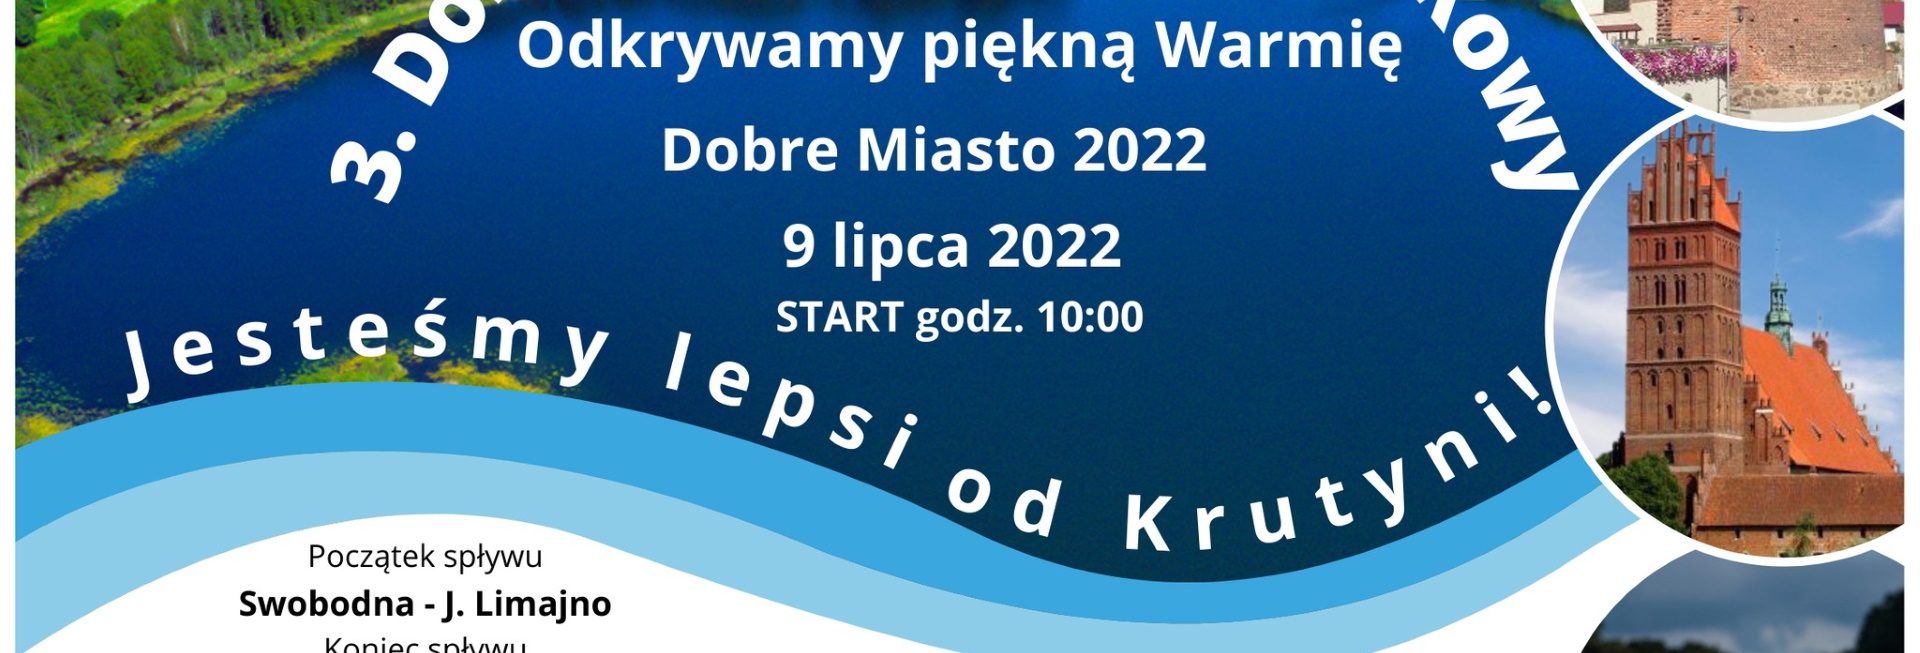 Plakat zapraszający do Dobrego Miasta na 3. edycję Dobromiejskiego Spływu Kajakowego 2022.